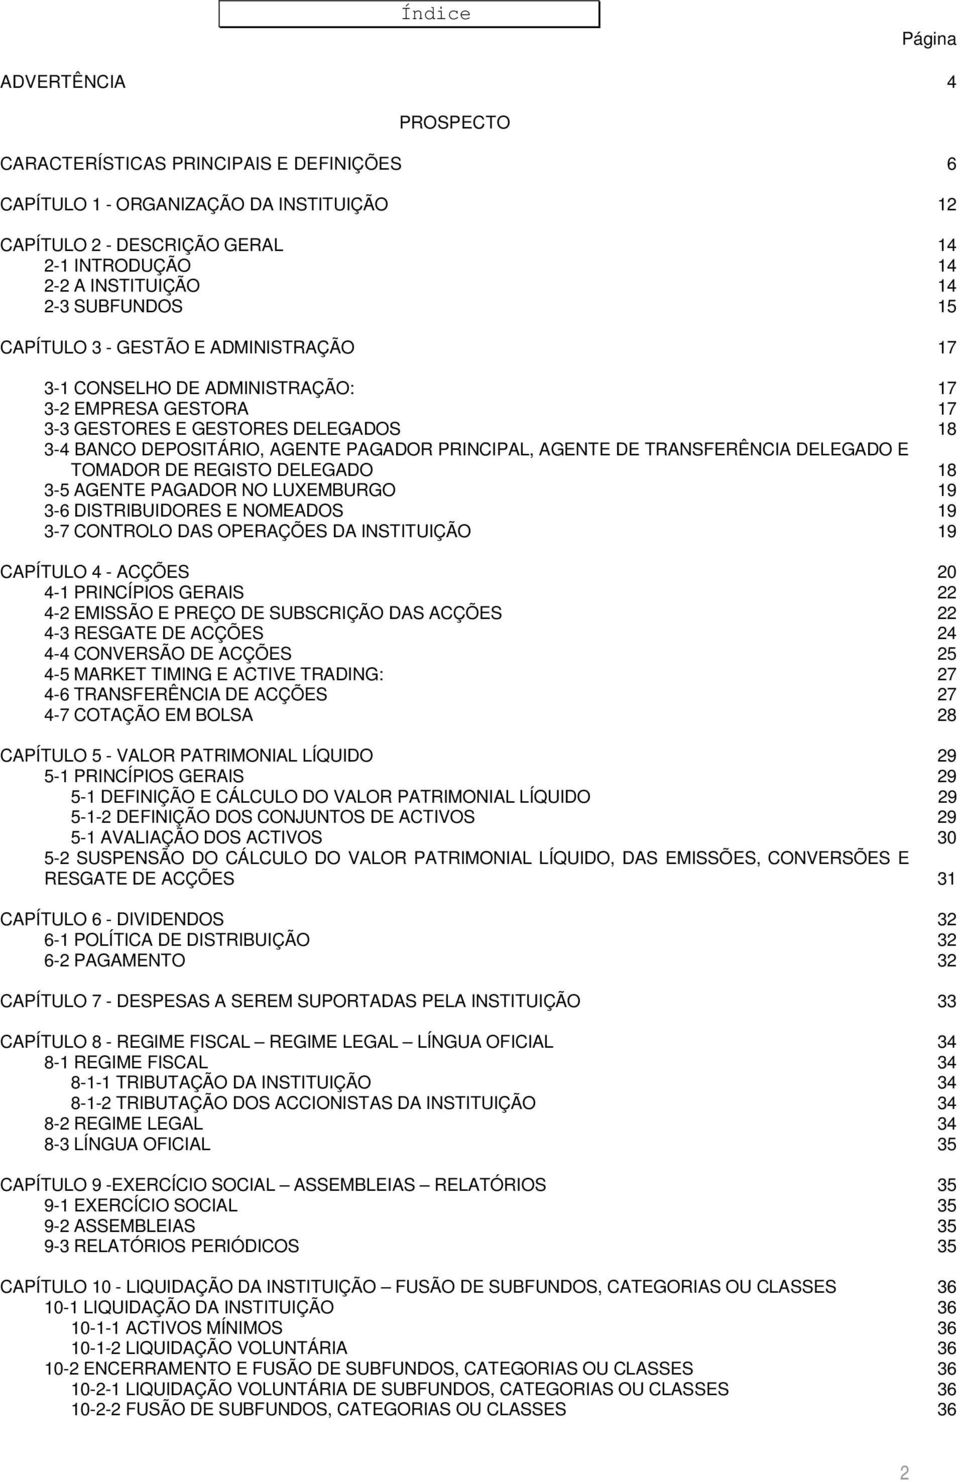 AGENTE DE TRANSFERÊNCIA DELEGADO E TOMADOR DE REGISTO DELEGADO 18 3-5 AGENTE PAGADOR NO LUXEMBURGO 19 3-6 DISTRIBUIDORES E NOMEADOS 19 3-7 CONTROLO DAS OPERAÇÕES DA INSTITUIÇÃO 19 CAPÍTULO 4 - ACÇÕES